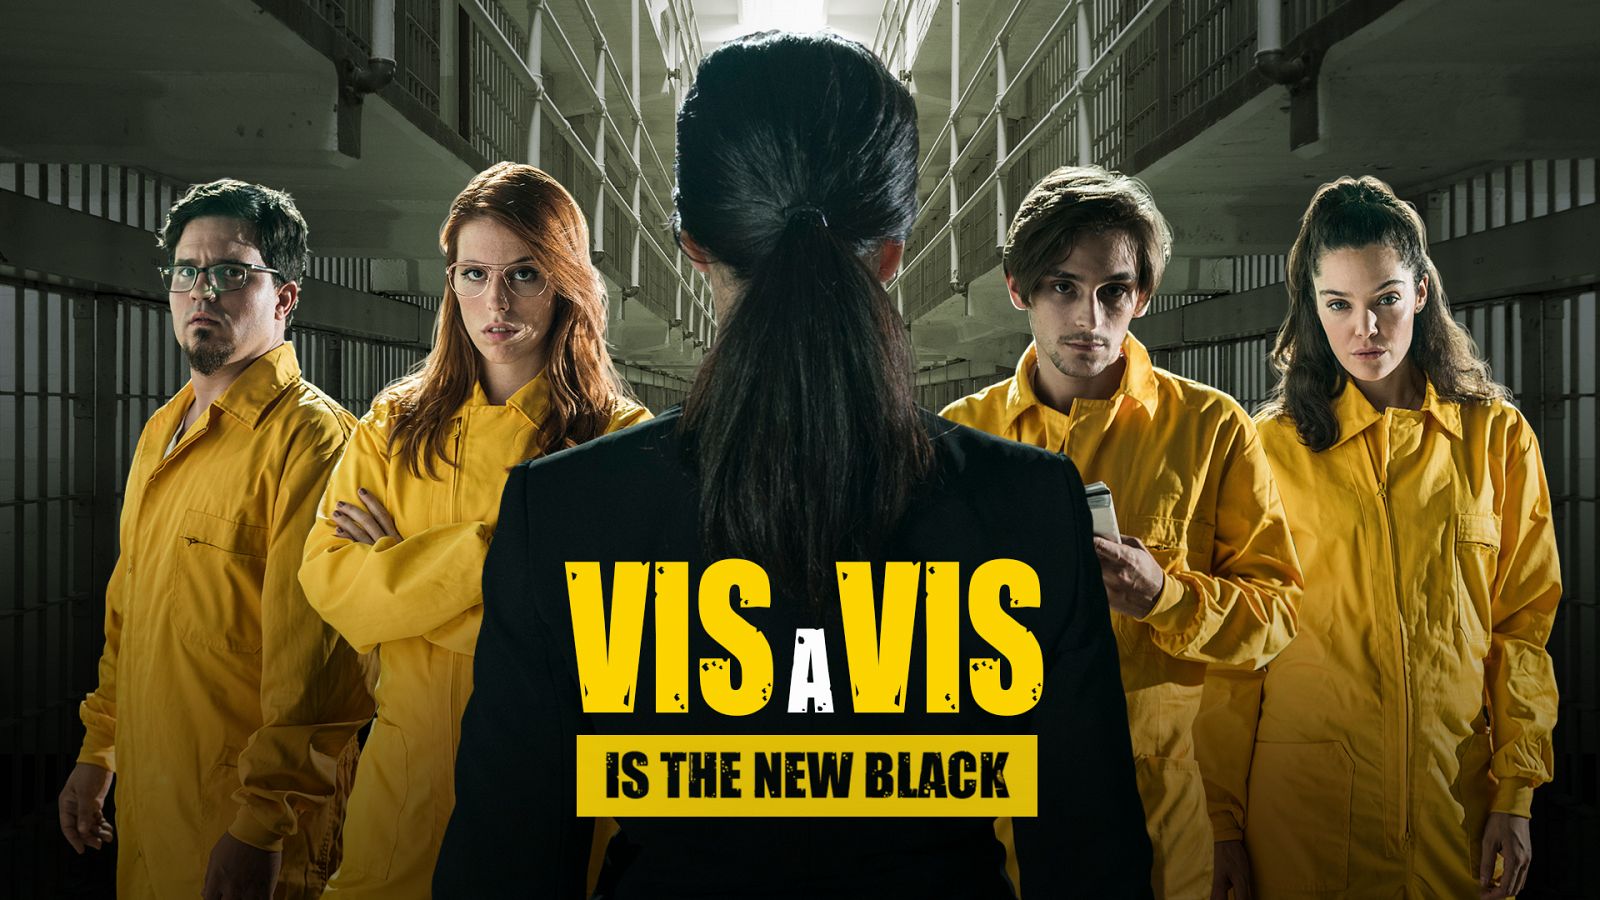 Neverfilms - Mira ya 'Vis a Vis is the new black'